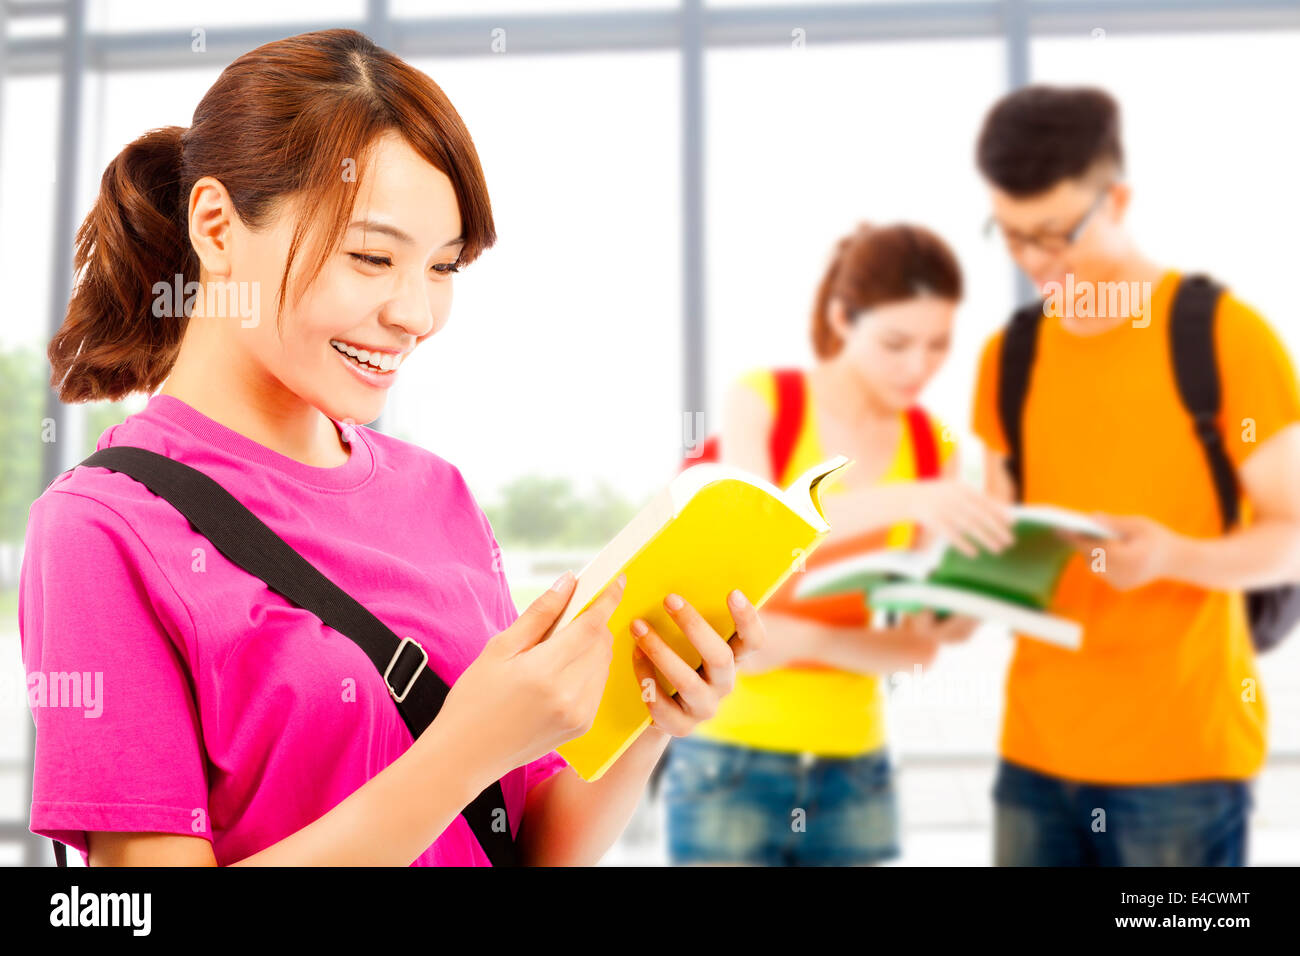 Jeune étudiant, lire un livre avec ses camarades à l'école Banque D'Images